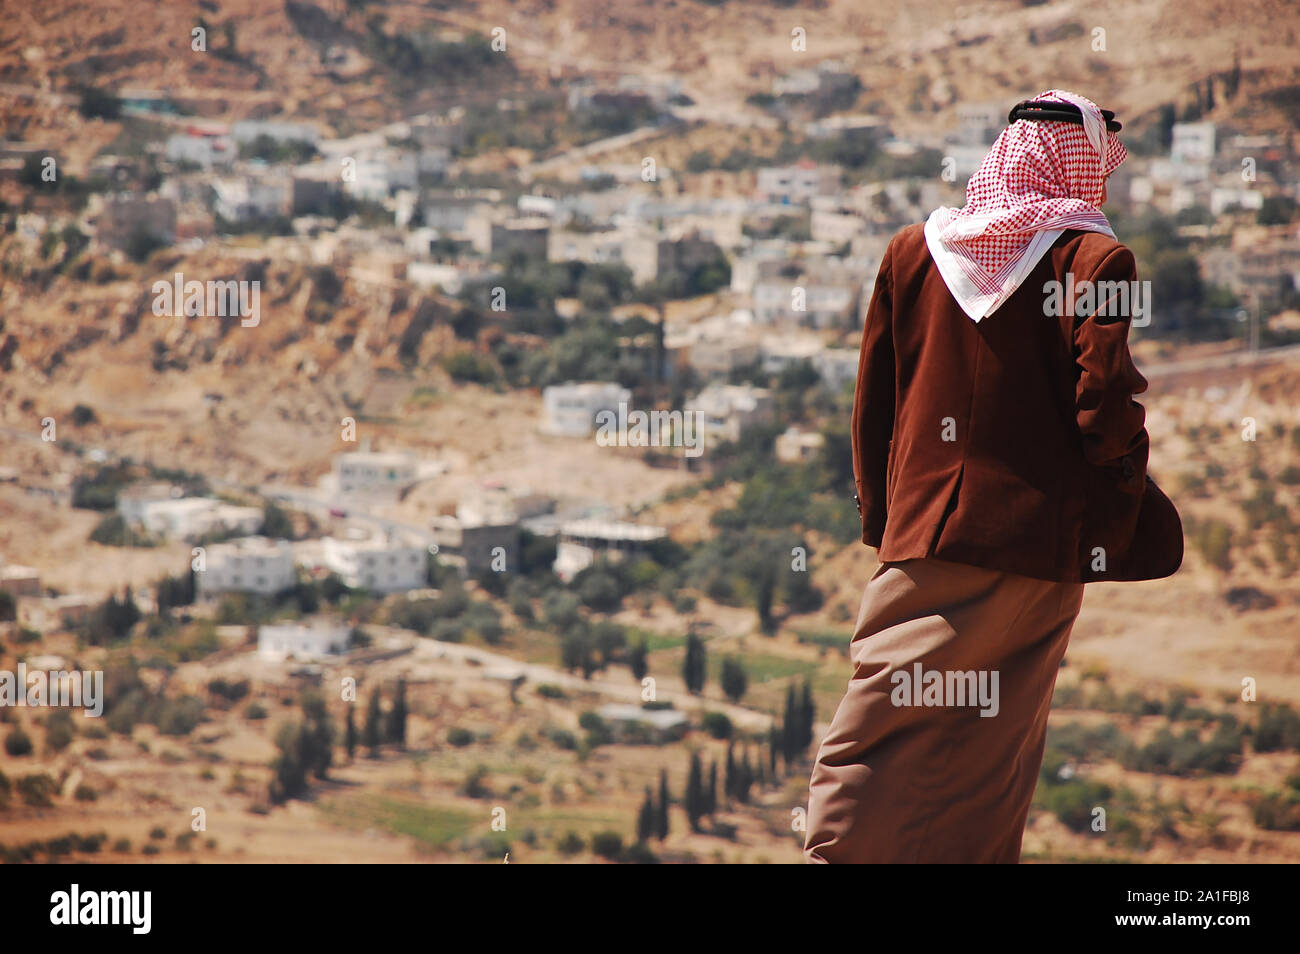 Jordanien portant des vêtements traditionnels arabes dans le haut de la colline Banque D'Images